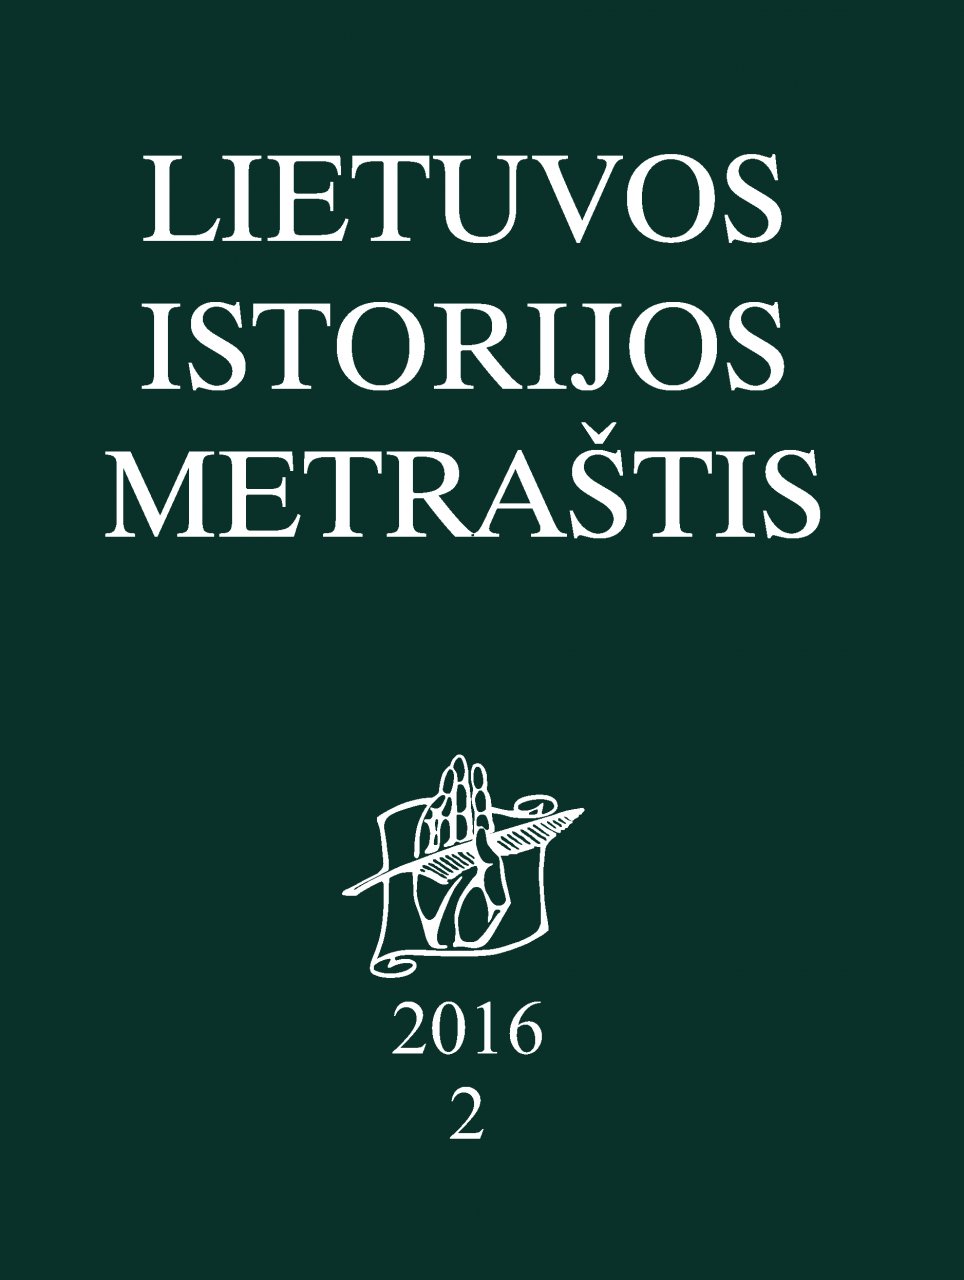 Lietuvos istorijos metraštis 2016 metai 2 